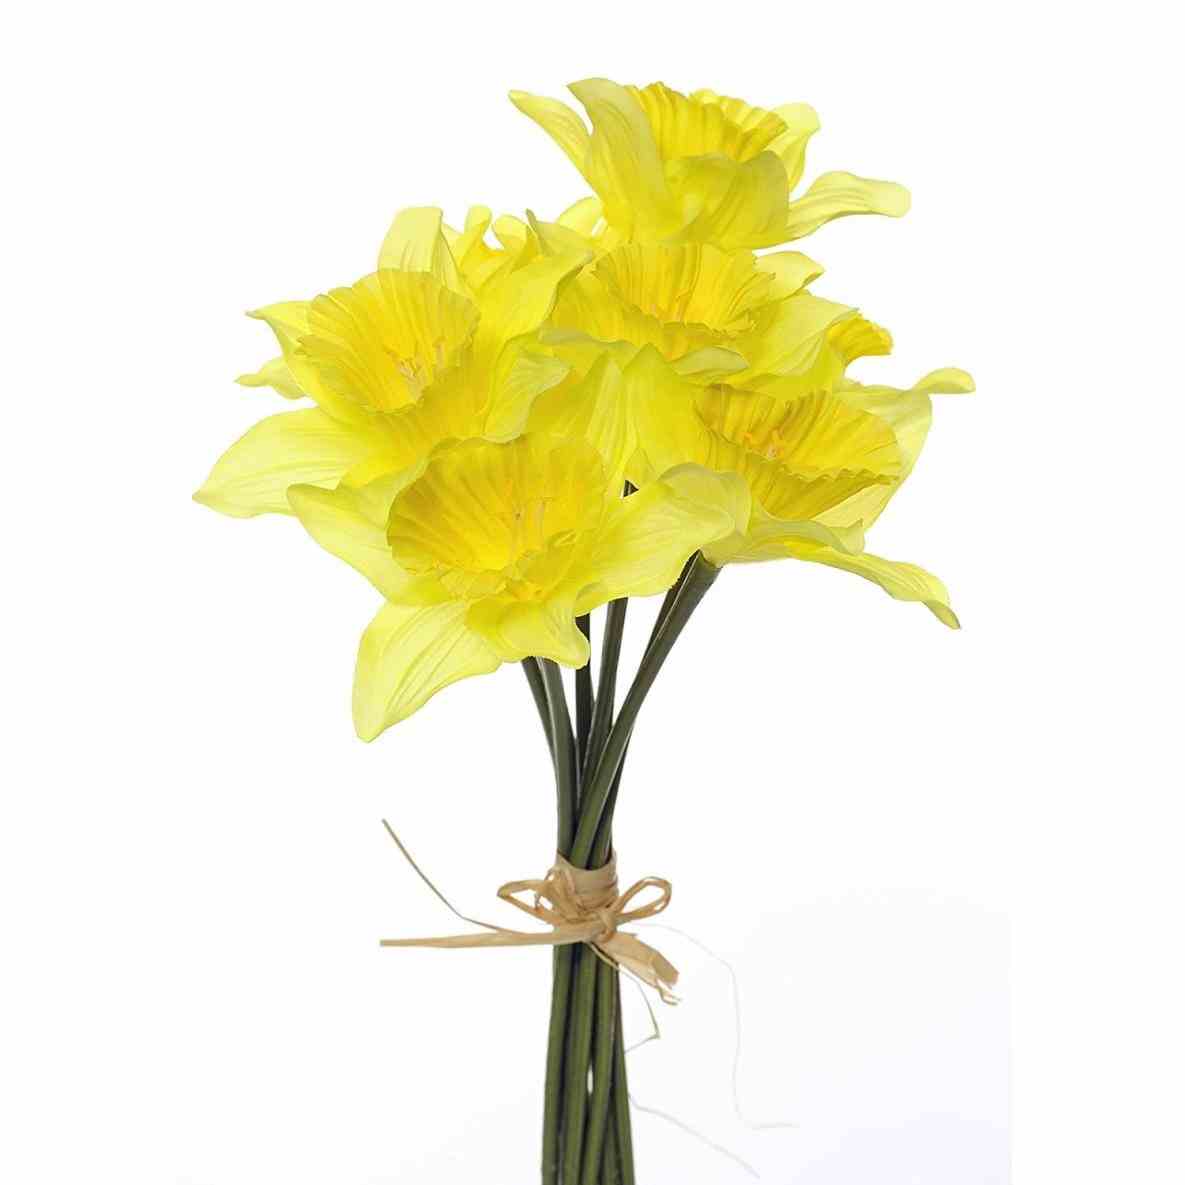 Daffodil clipart wind. X free clip art